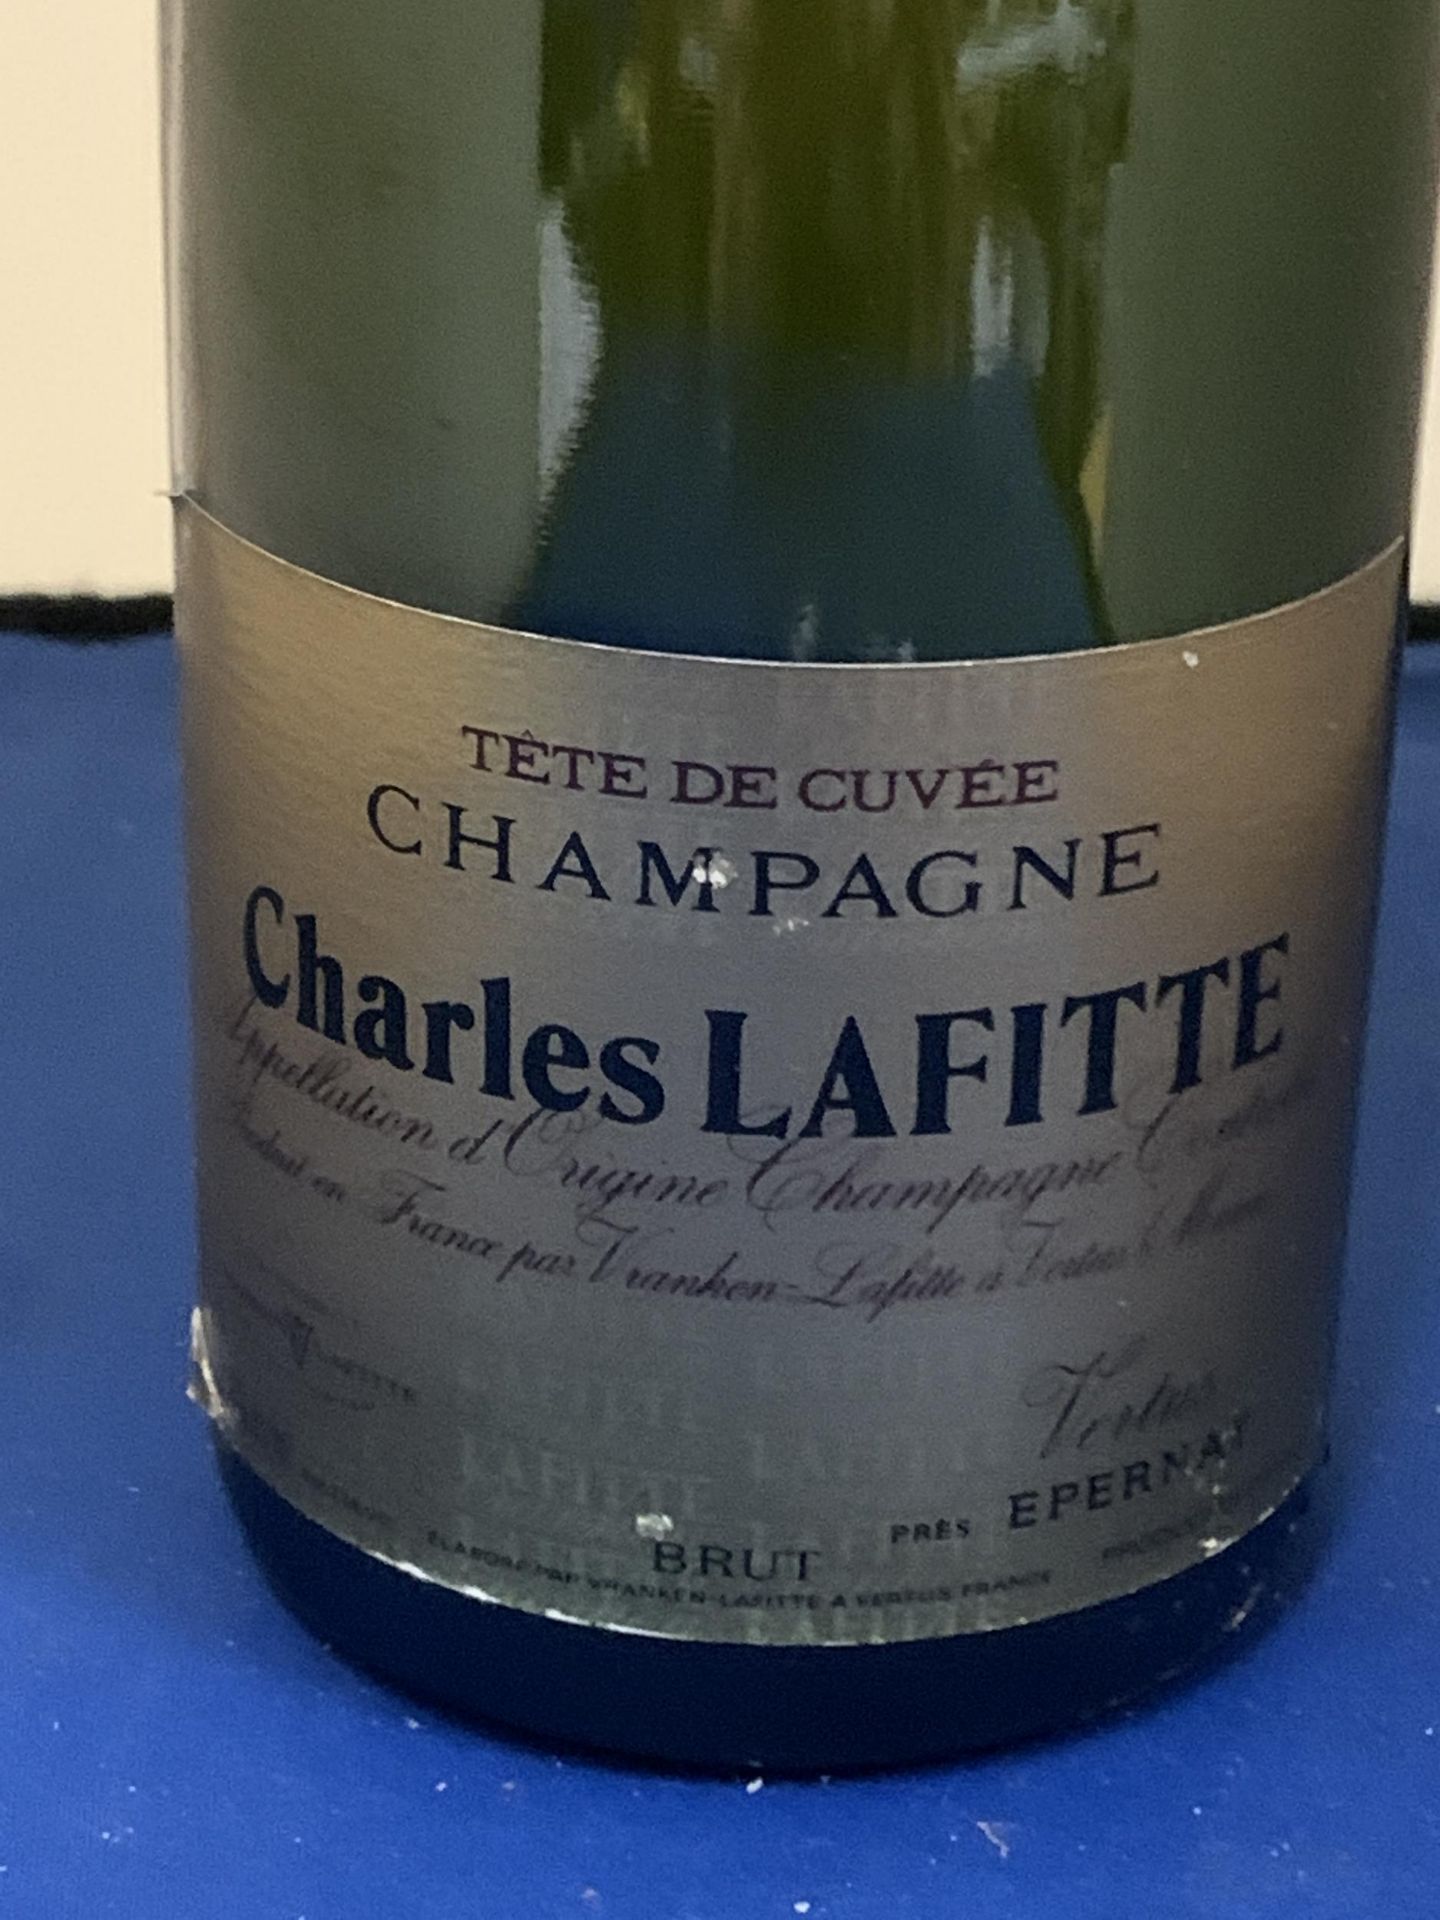 A BOTTLE OF CHARLES LAFITTE TETE DE CUVEE CHAMPAGNE - Bild 2 aus 4